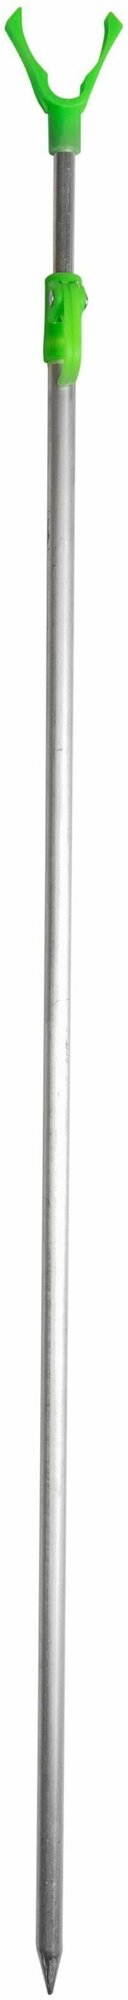 Подставка для удочки тип 2 - ручка (телескоп 1.5м аллюминий пластиковый стопор-ручка)